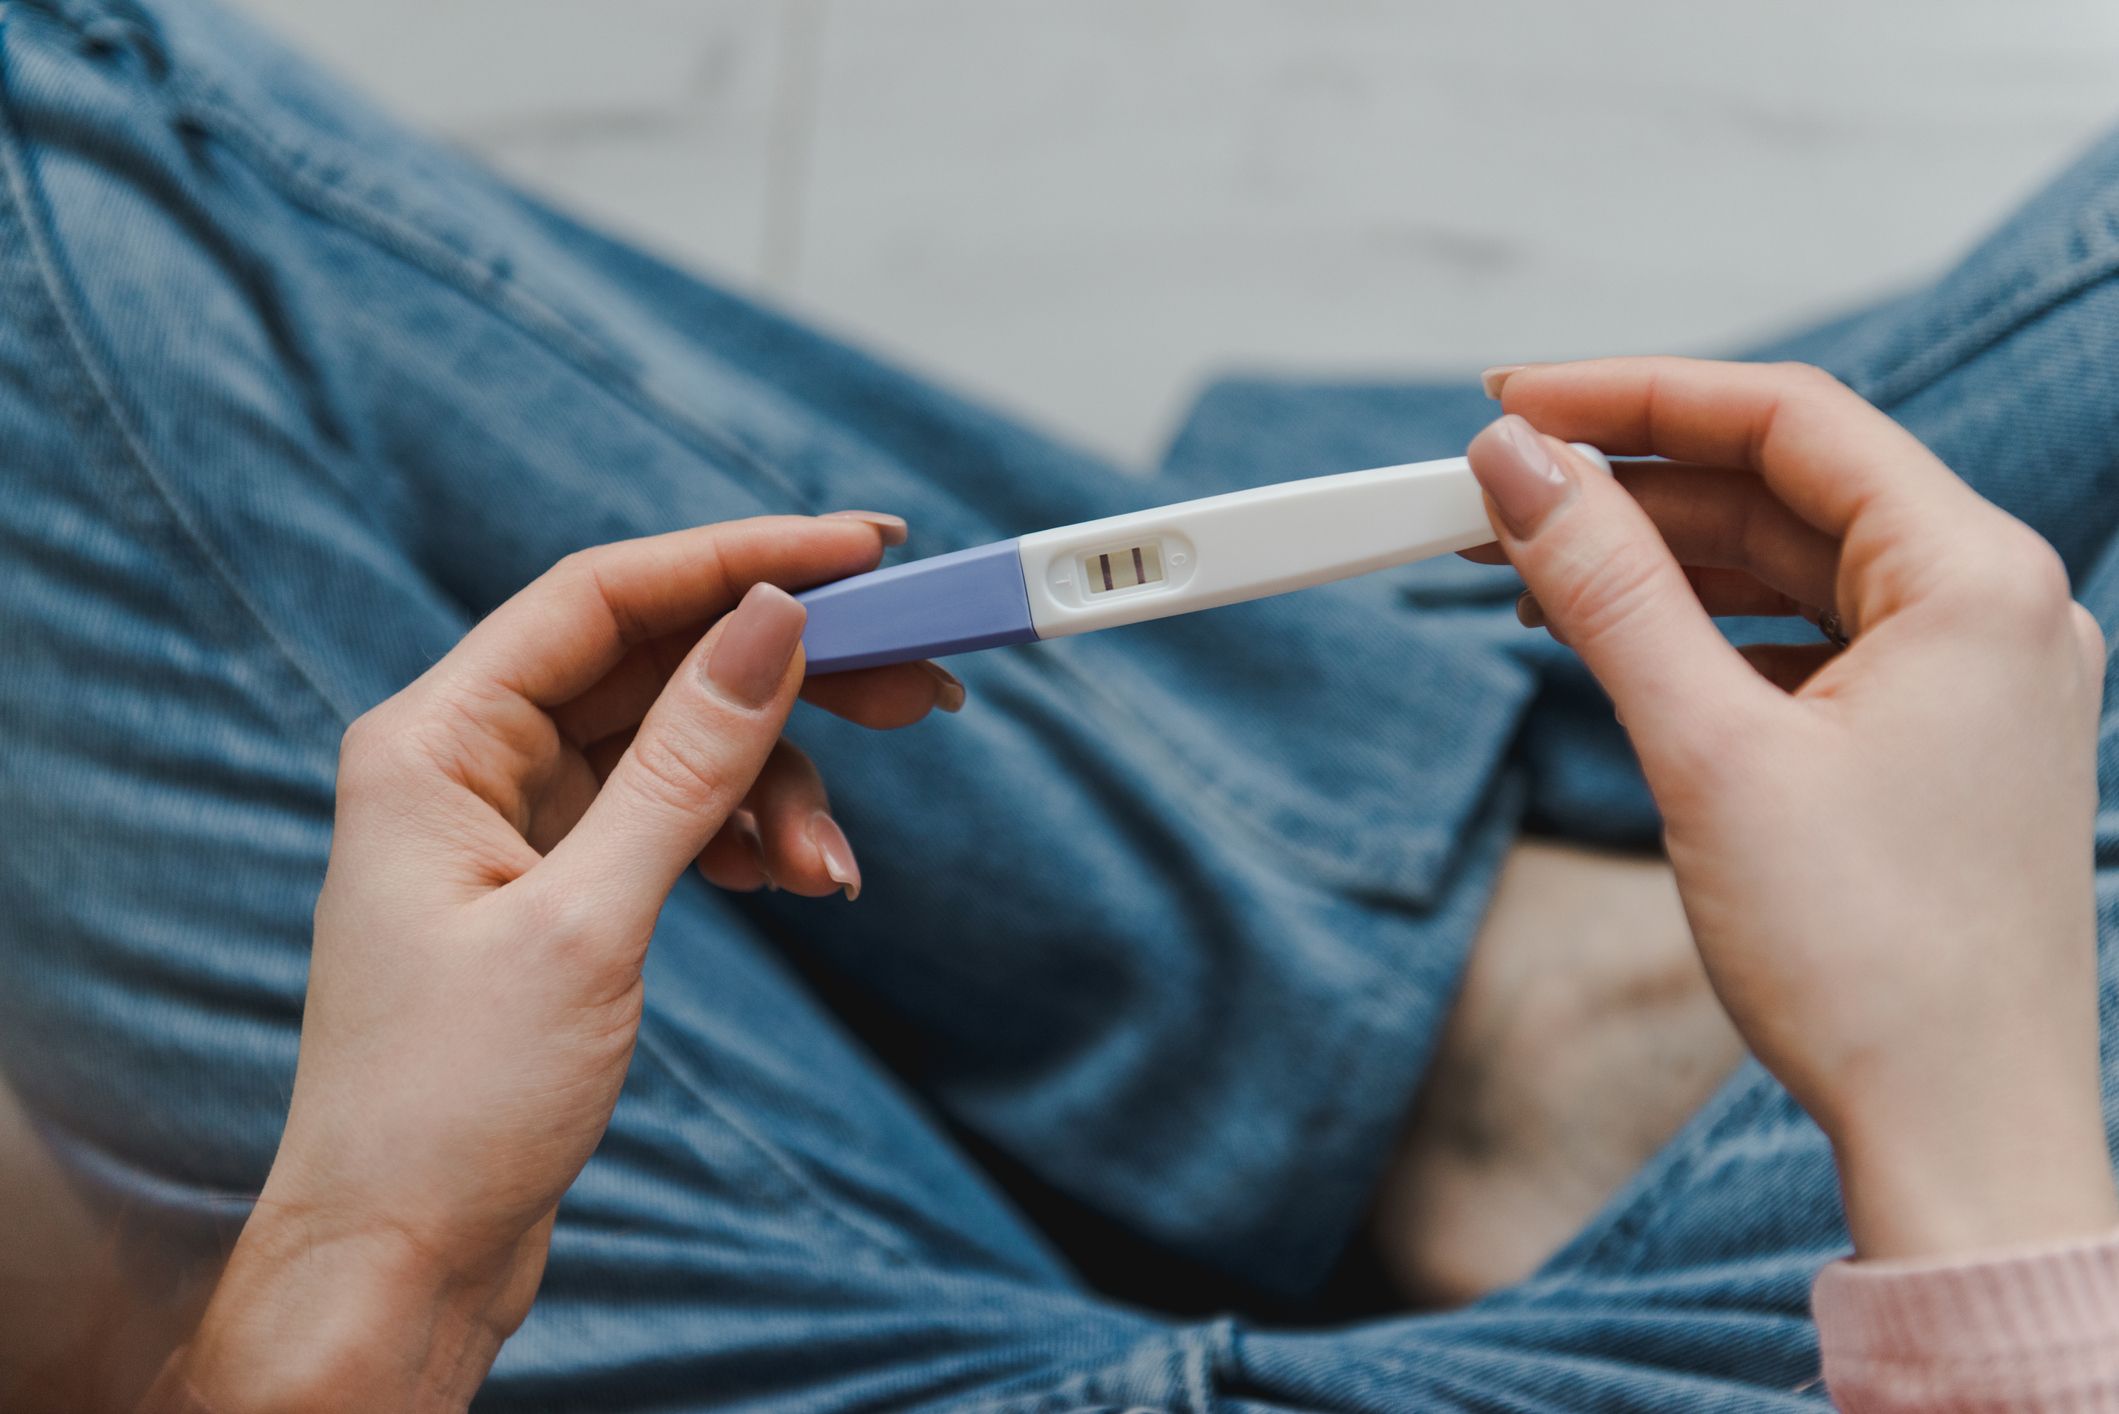 Do Pregnancy Symptoms Come and Go?